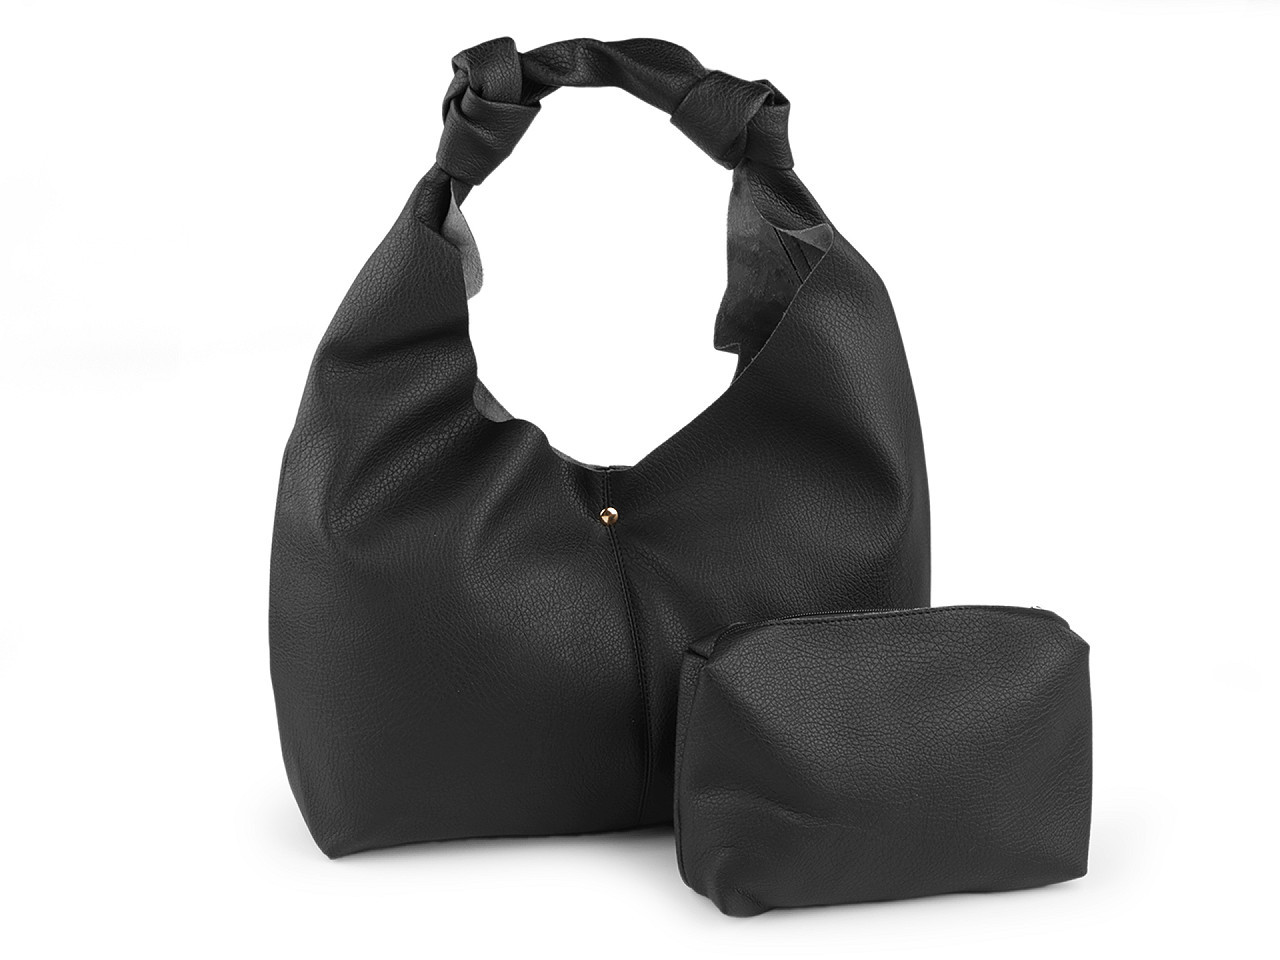 Velká kabelka s pouzdrem 47x30 cm, barva 2 černá